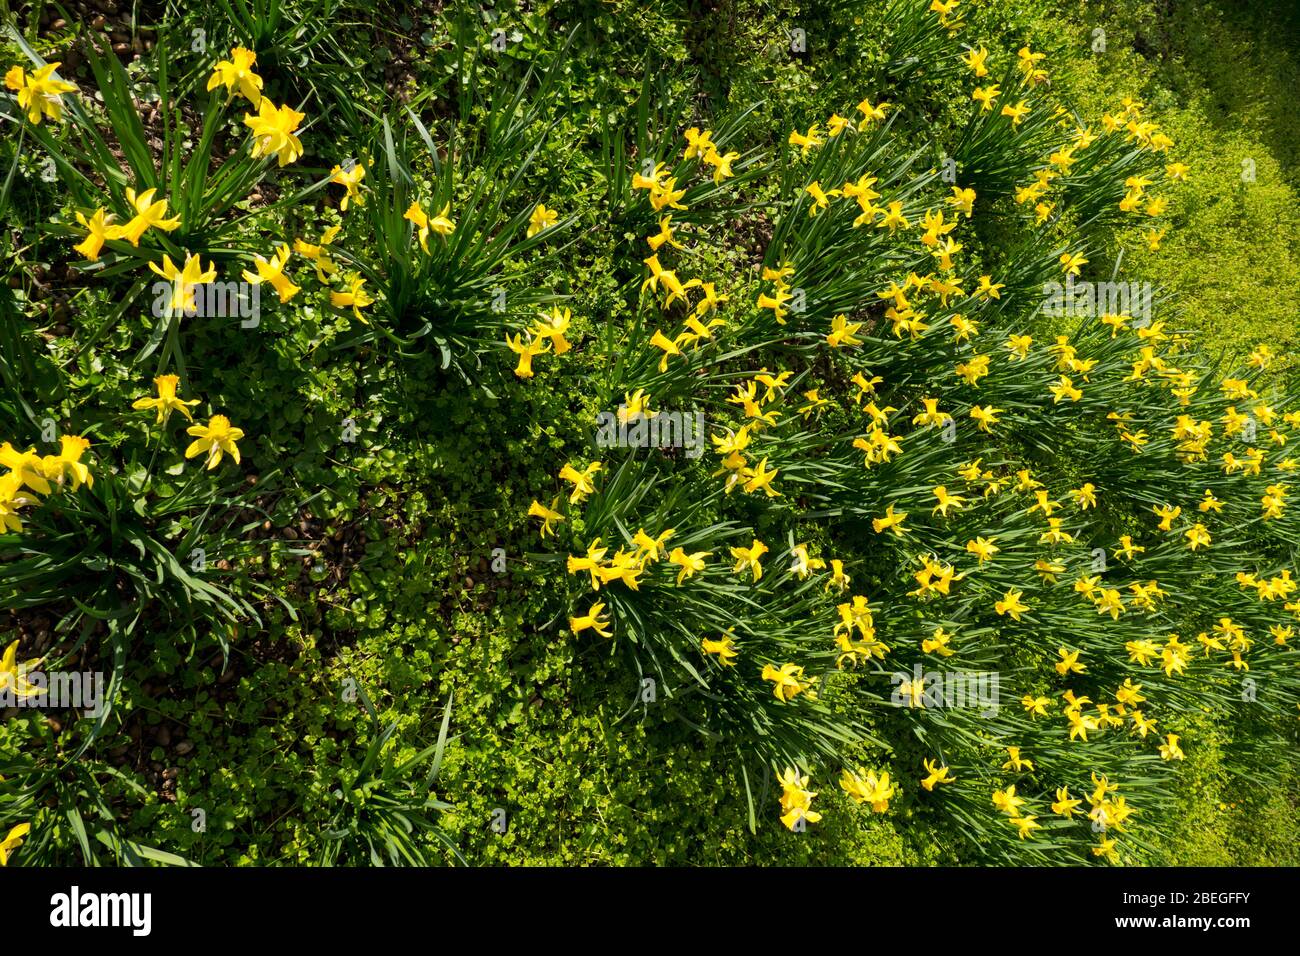 Osterglocken, Narzissen blühen leuchtend Gelb auf einer Wiese Stock Photo